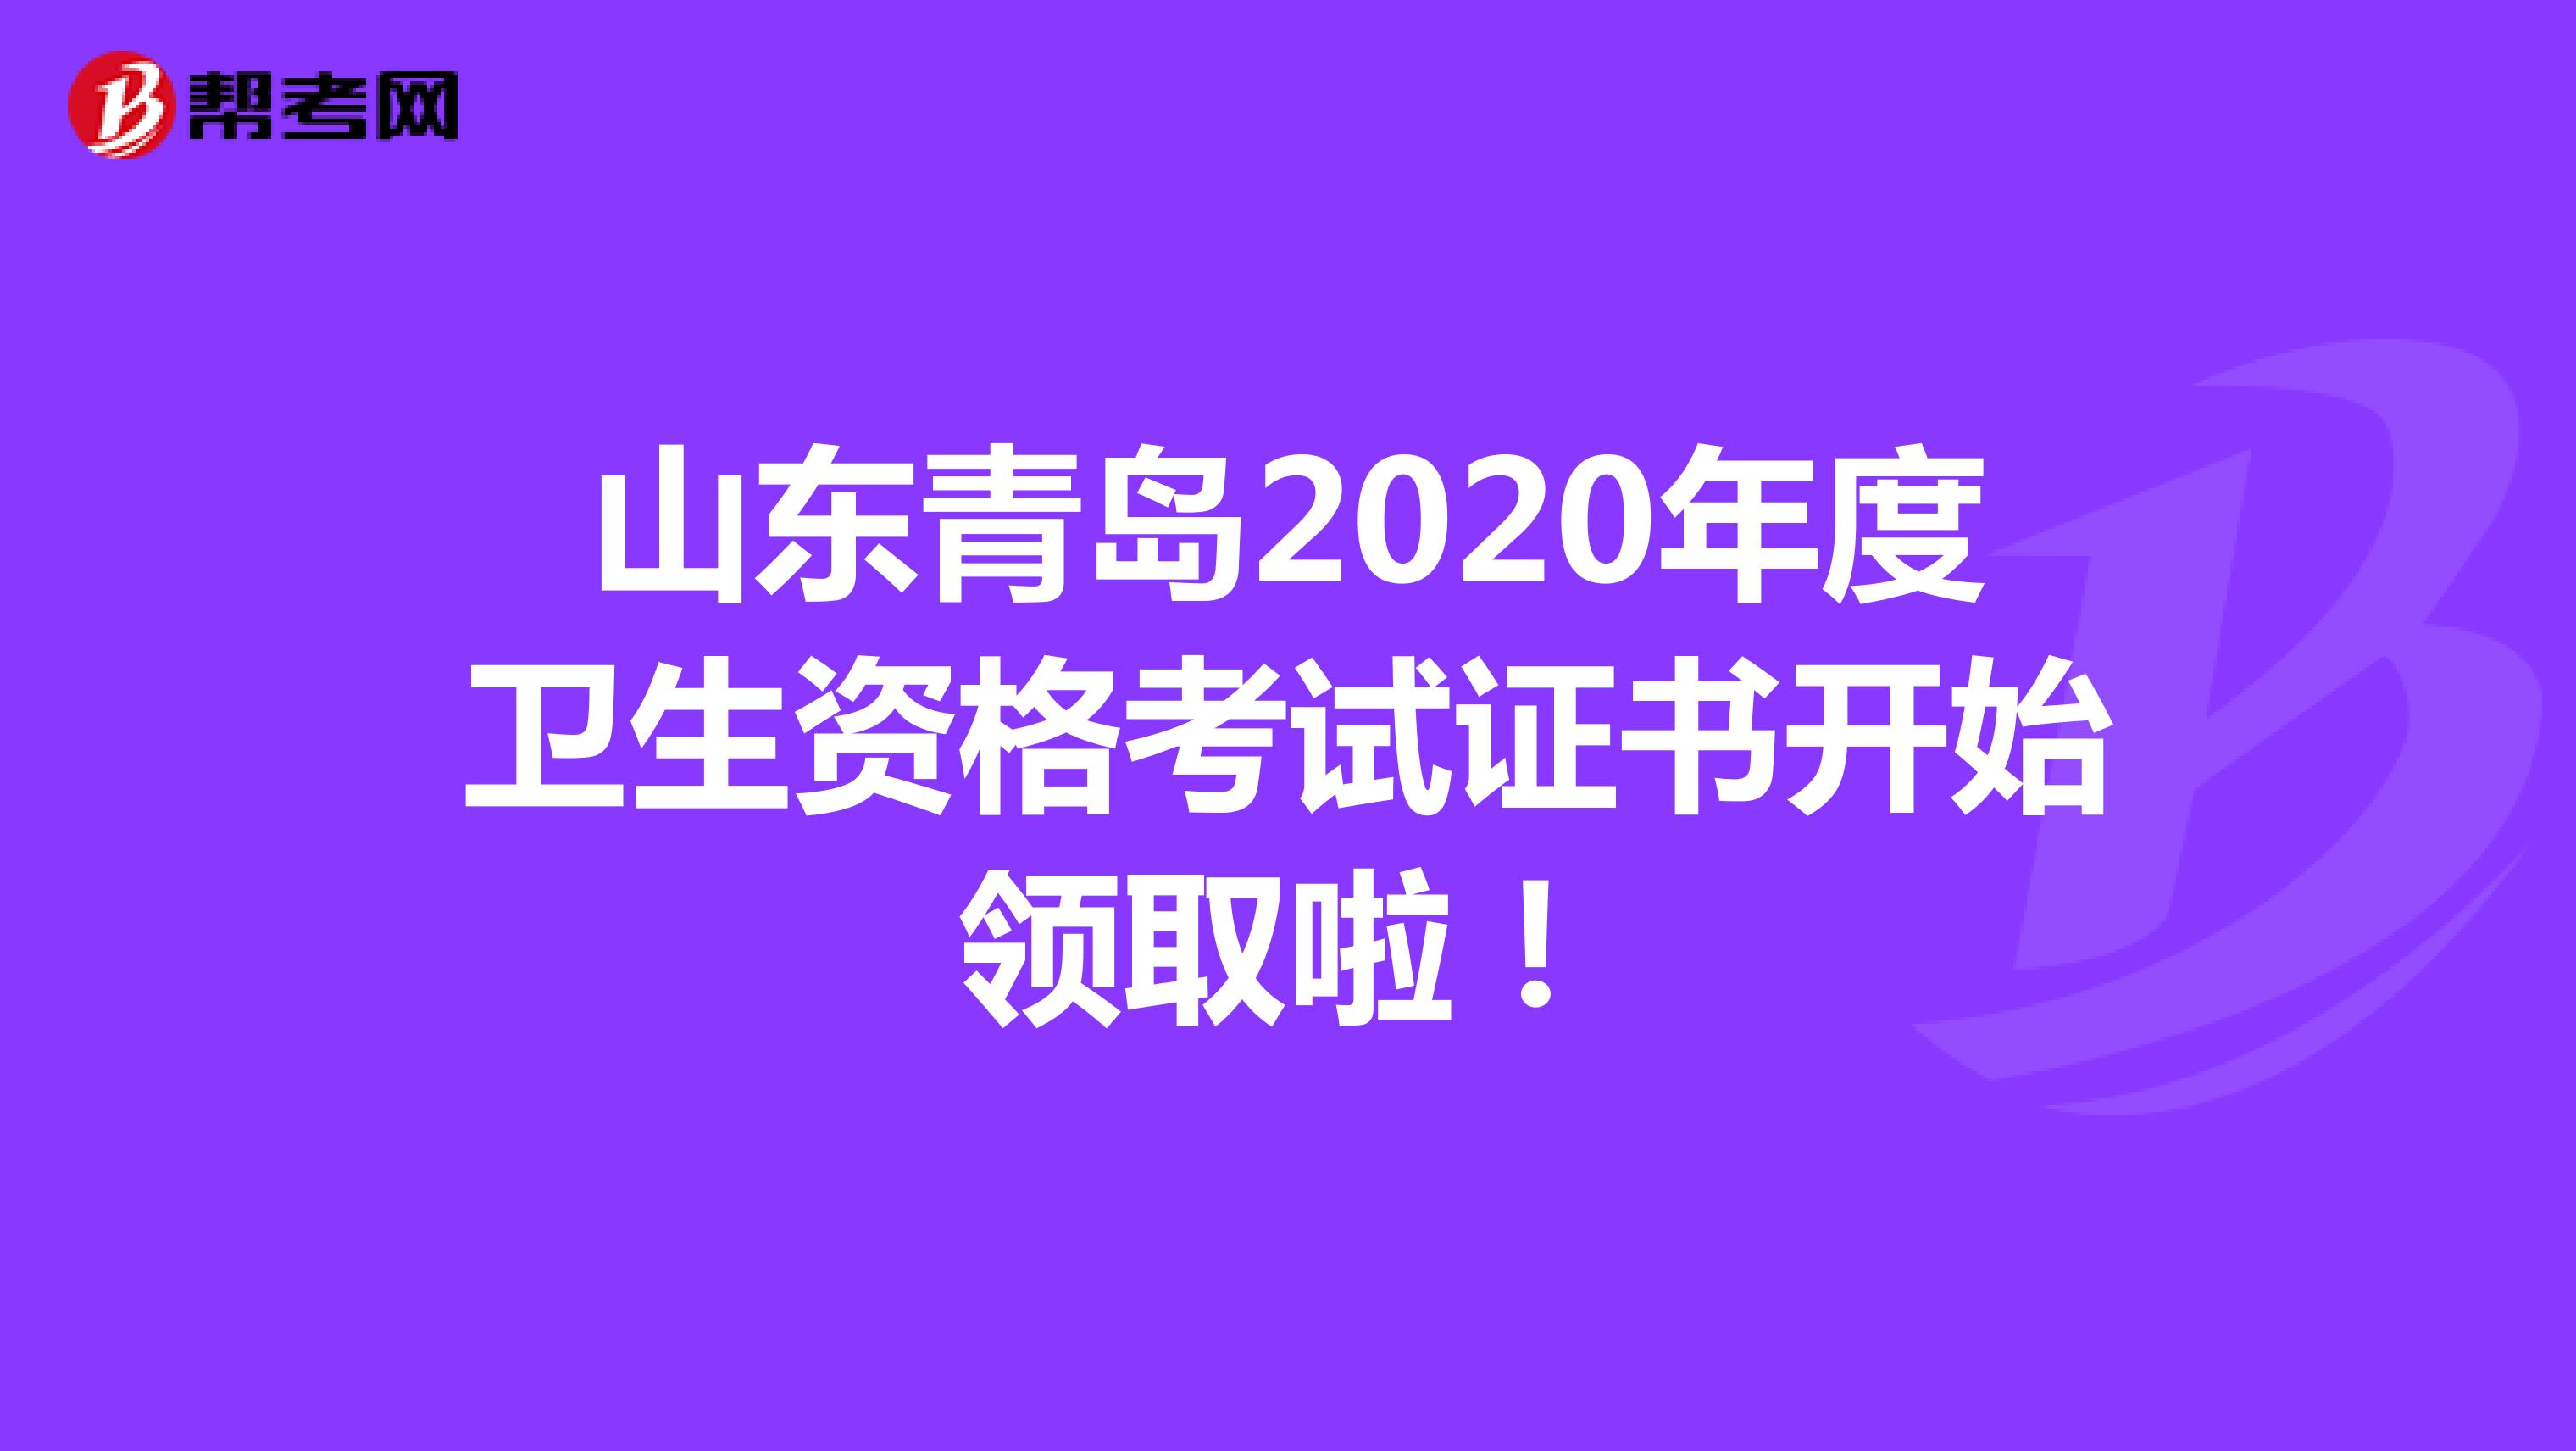 山东青岛2020年度卫生资格考试证书开始领取啦！